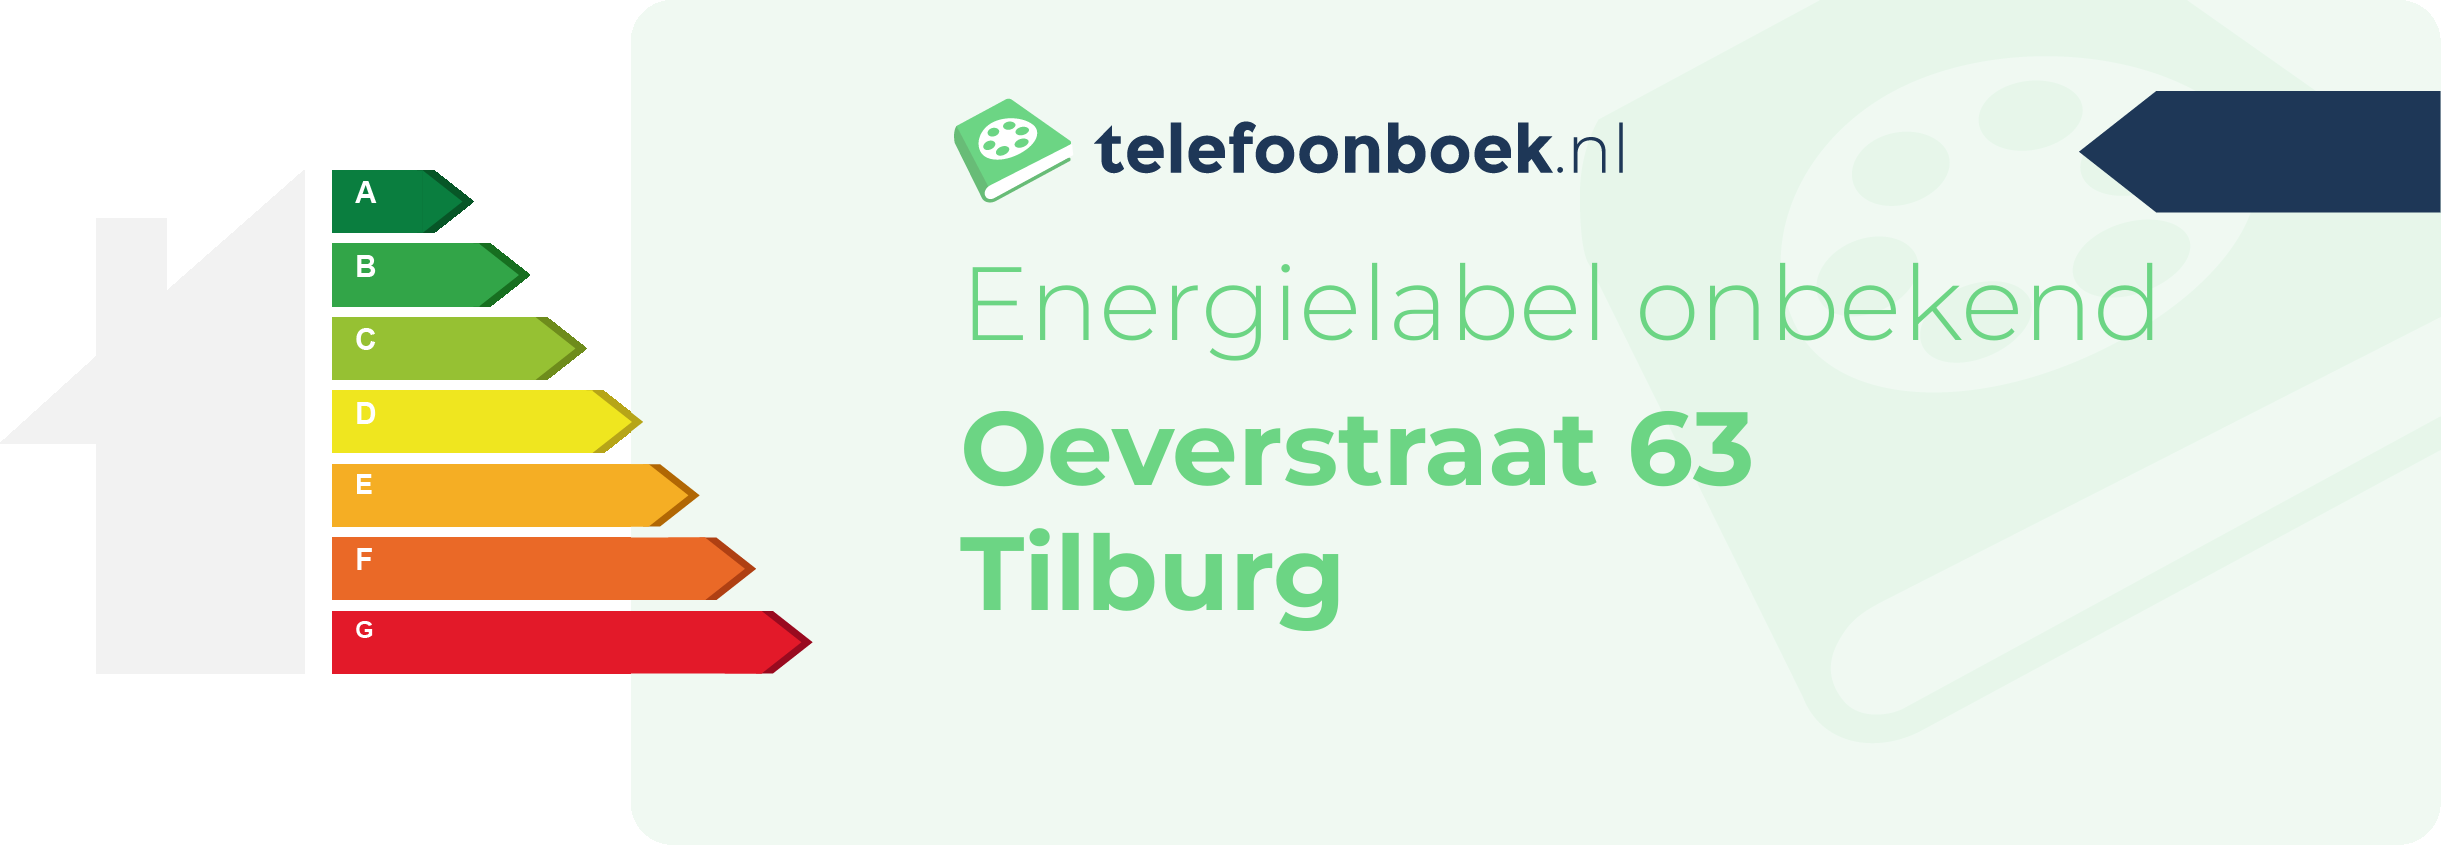 Energielabel Oeverstraat 63 Tilburg